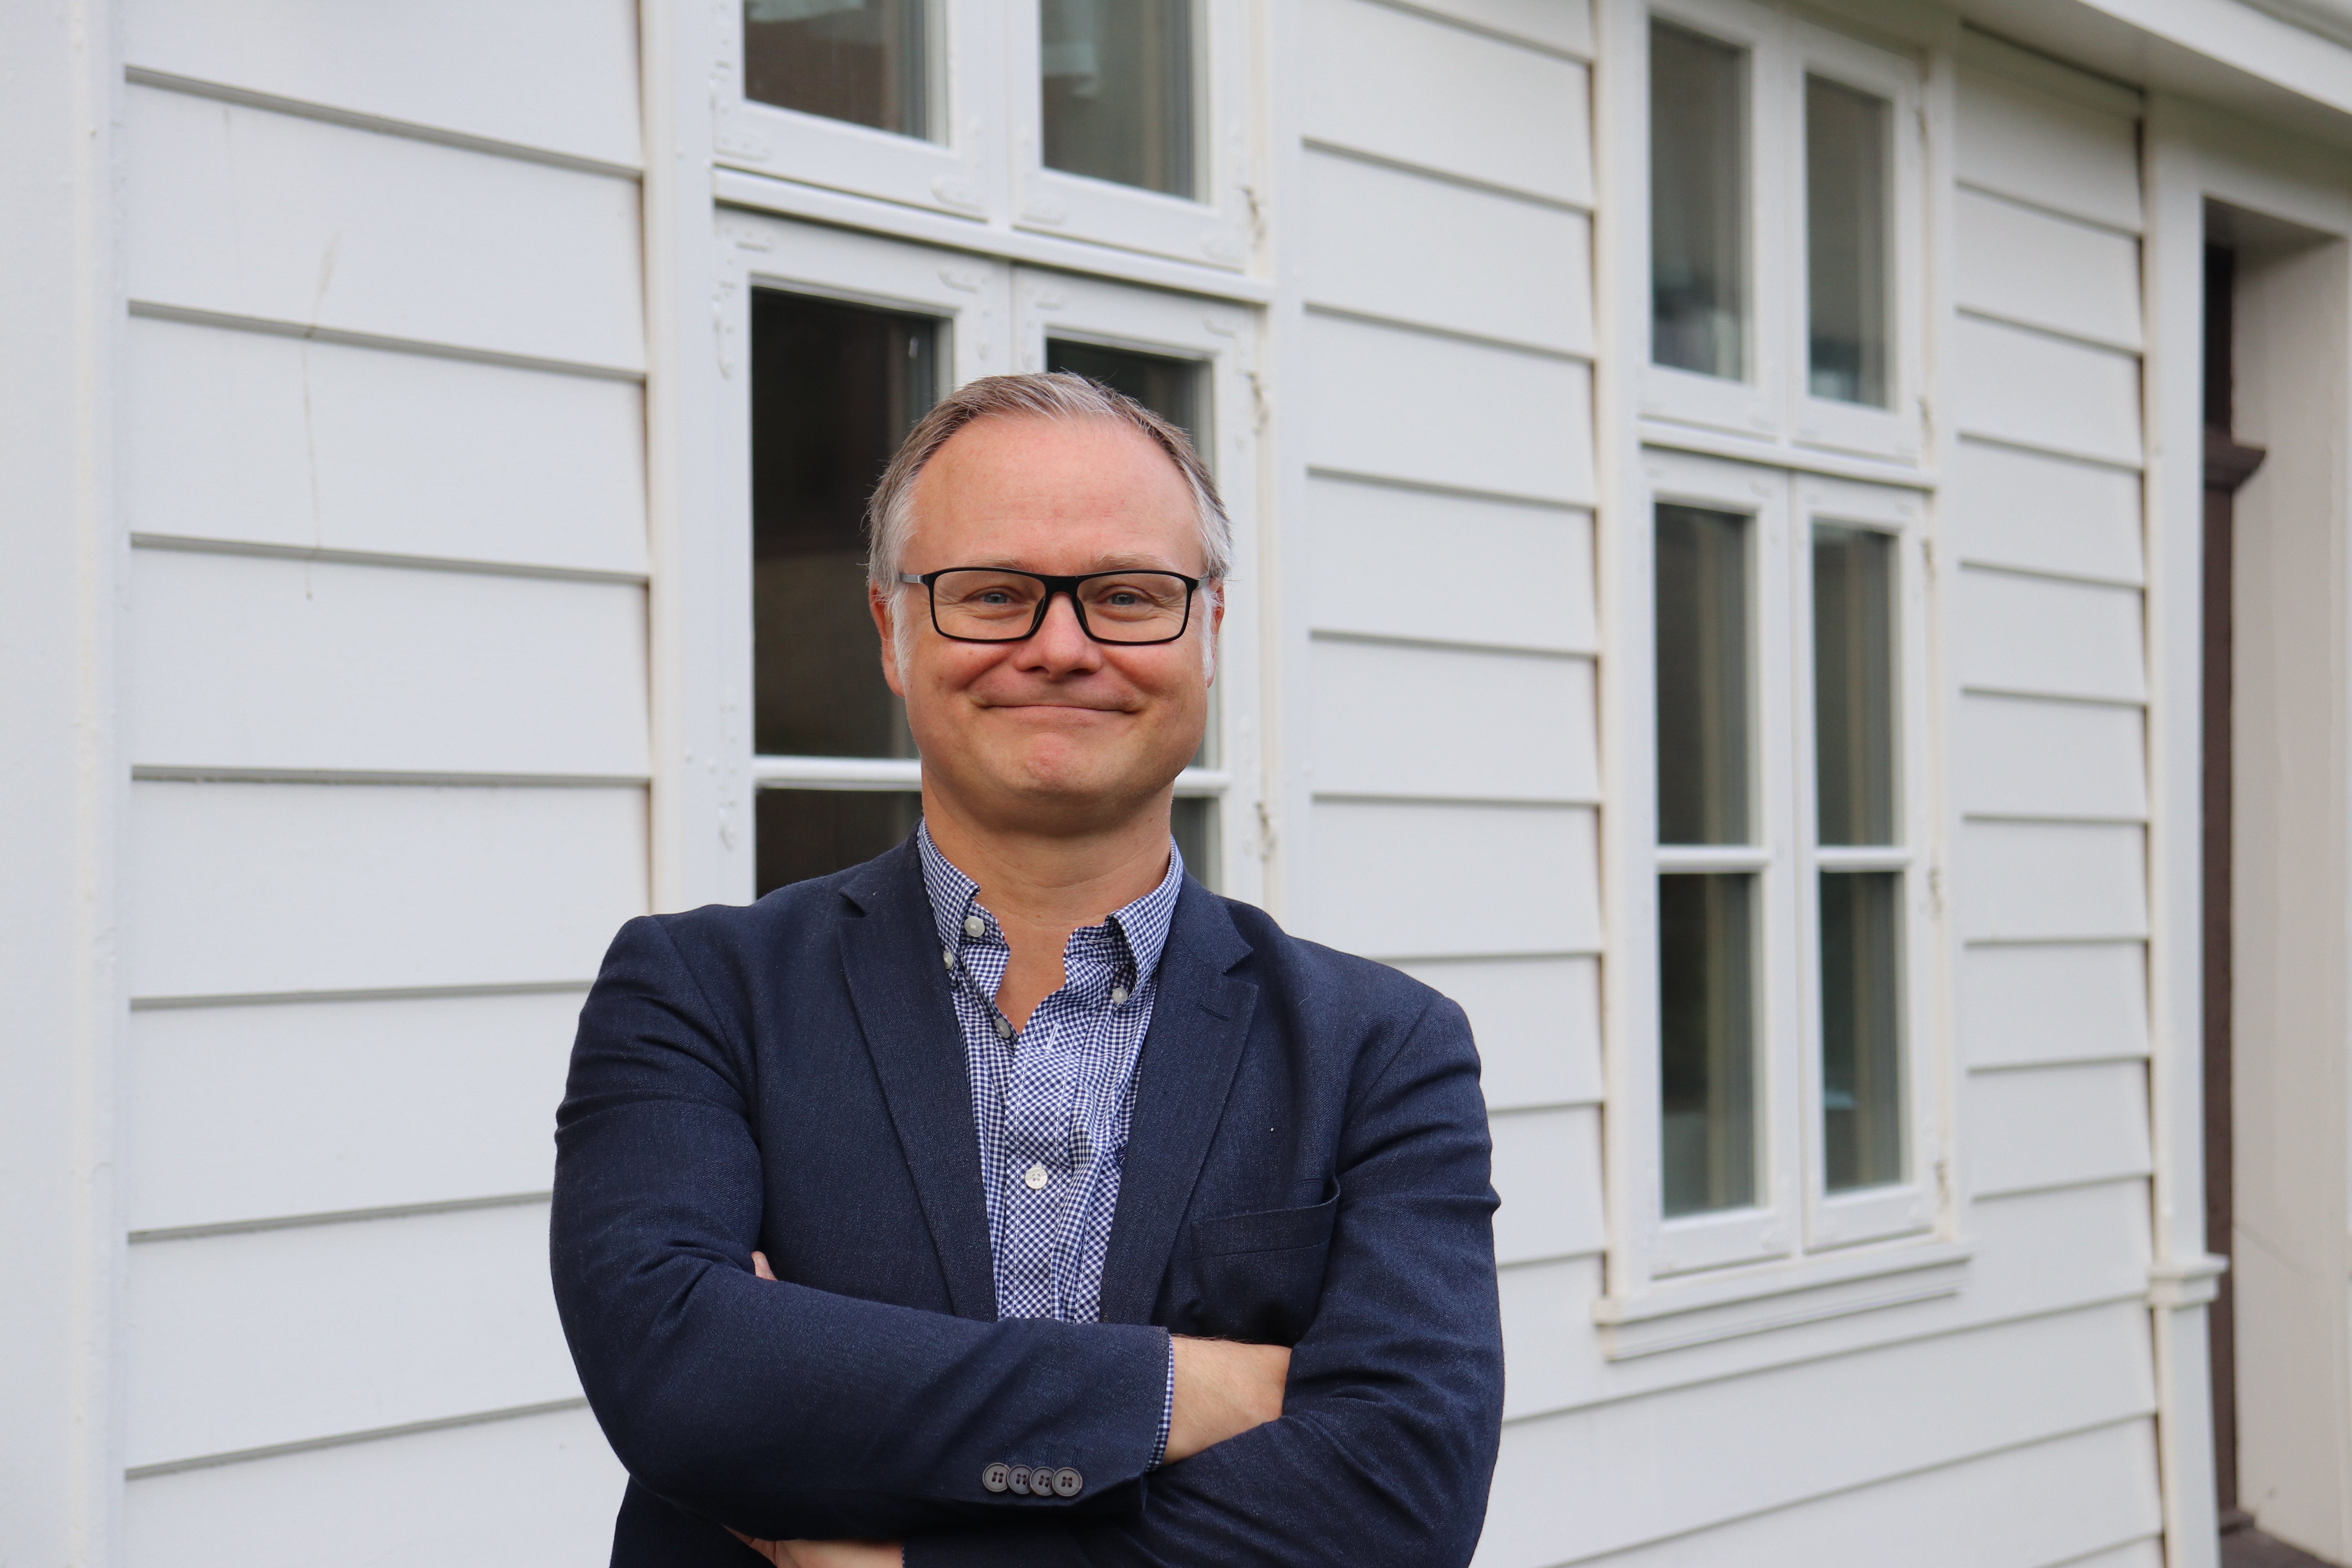 Professor Bjørn Enge Bertelsen overtar som ny faglig leder av Holbergprisens sekretariat den 1. januar 2022.